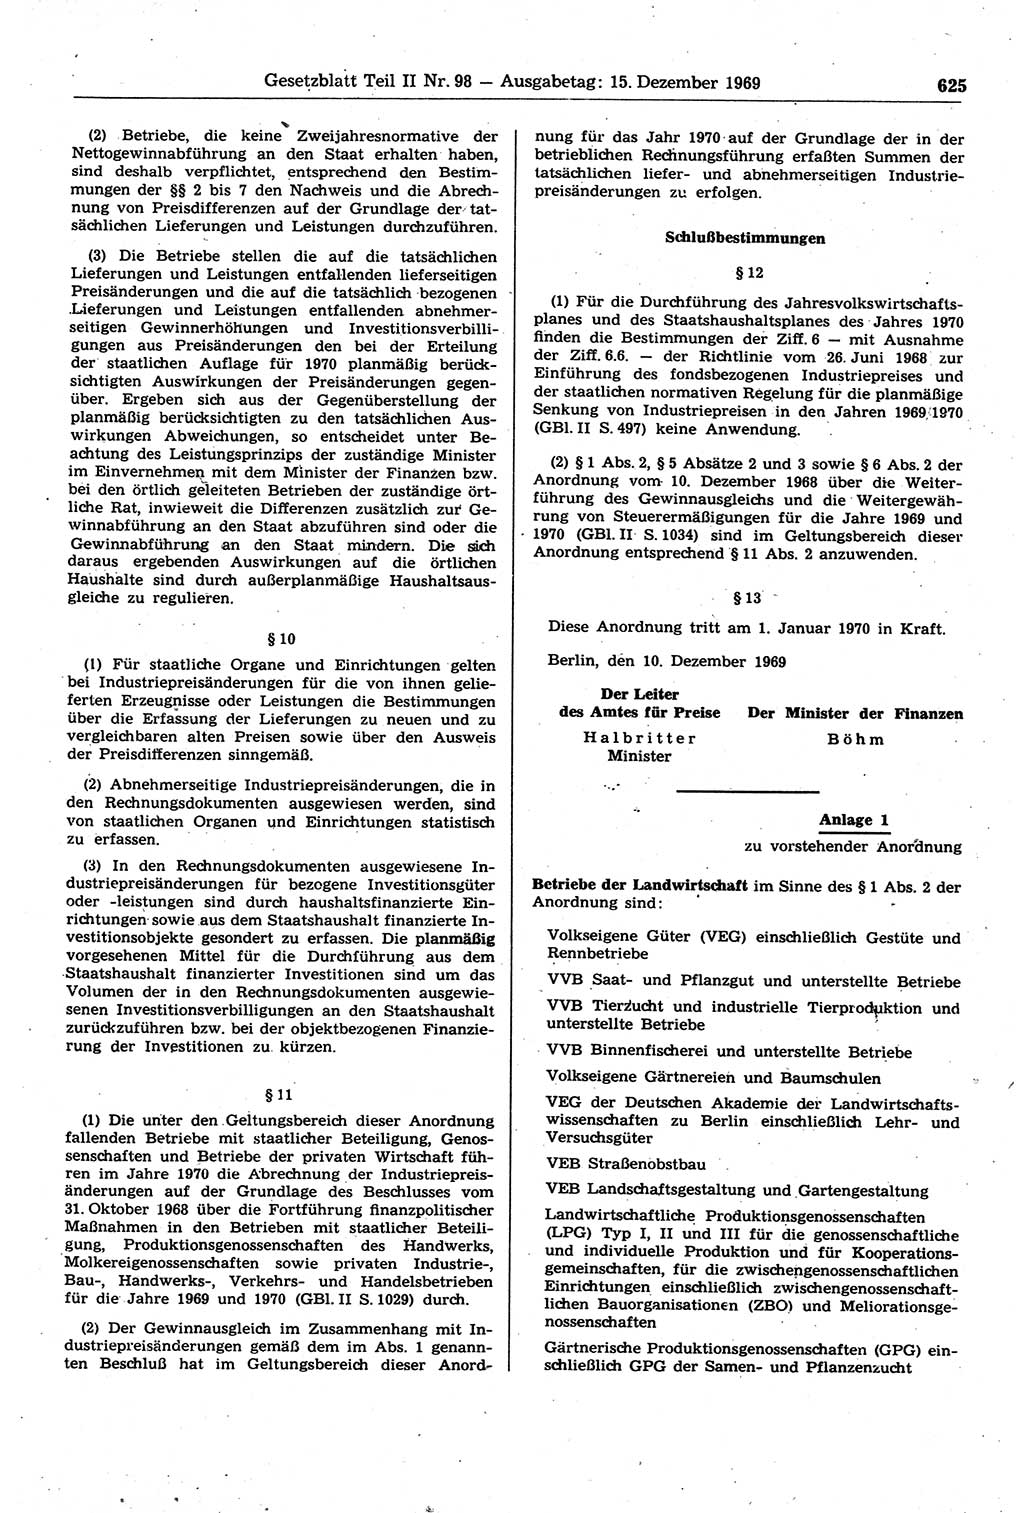 Gesetzblatt (GBl.) der Deutschen Demokratischen Republik (DDR) Teil ⅠⅠ 1969, Seite 625 (GBl. DDR ⅠⅠ 1969, S. 625)